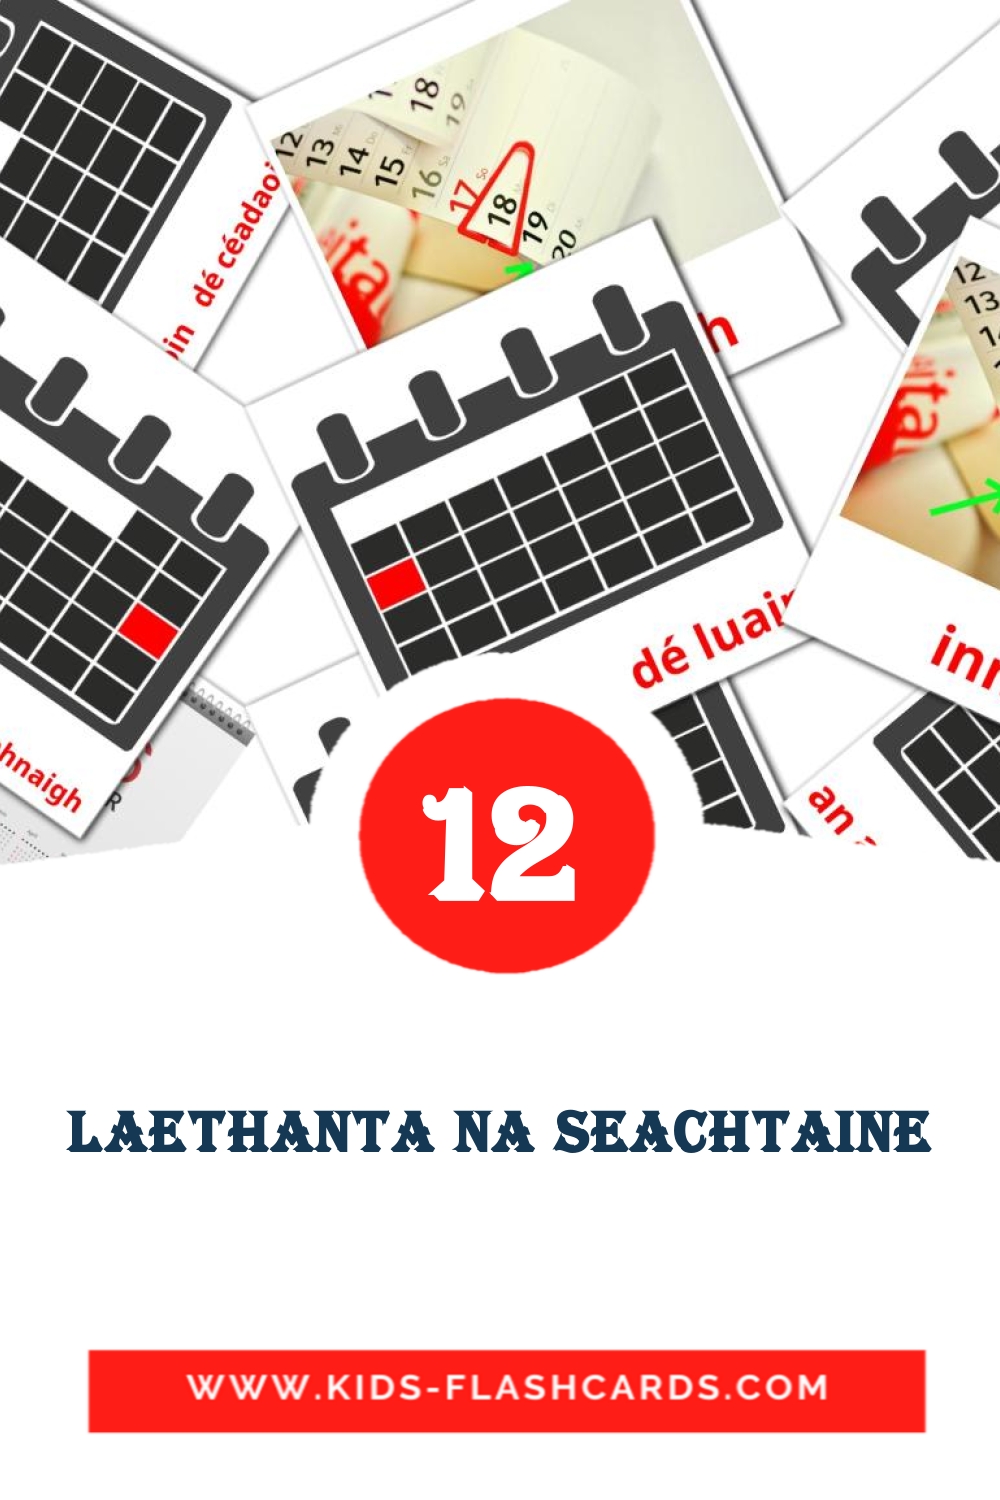 12 carte illustrate di Laethanta na seachtaine per la scuola materna in irlandesi